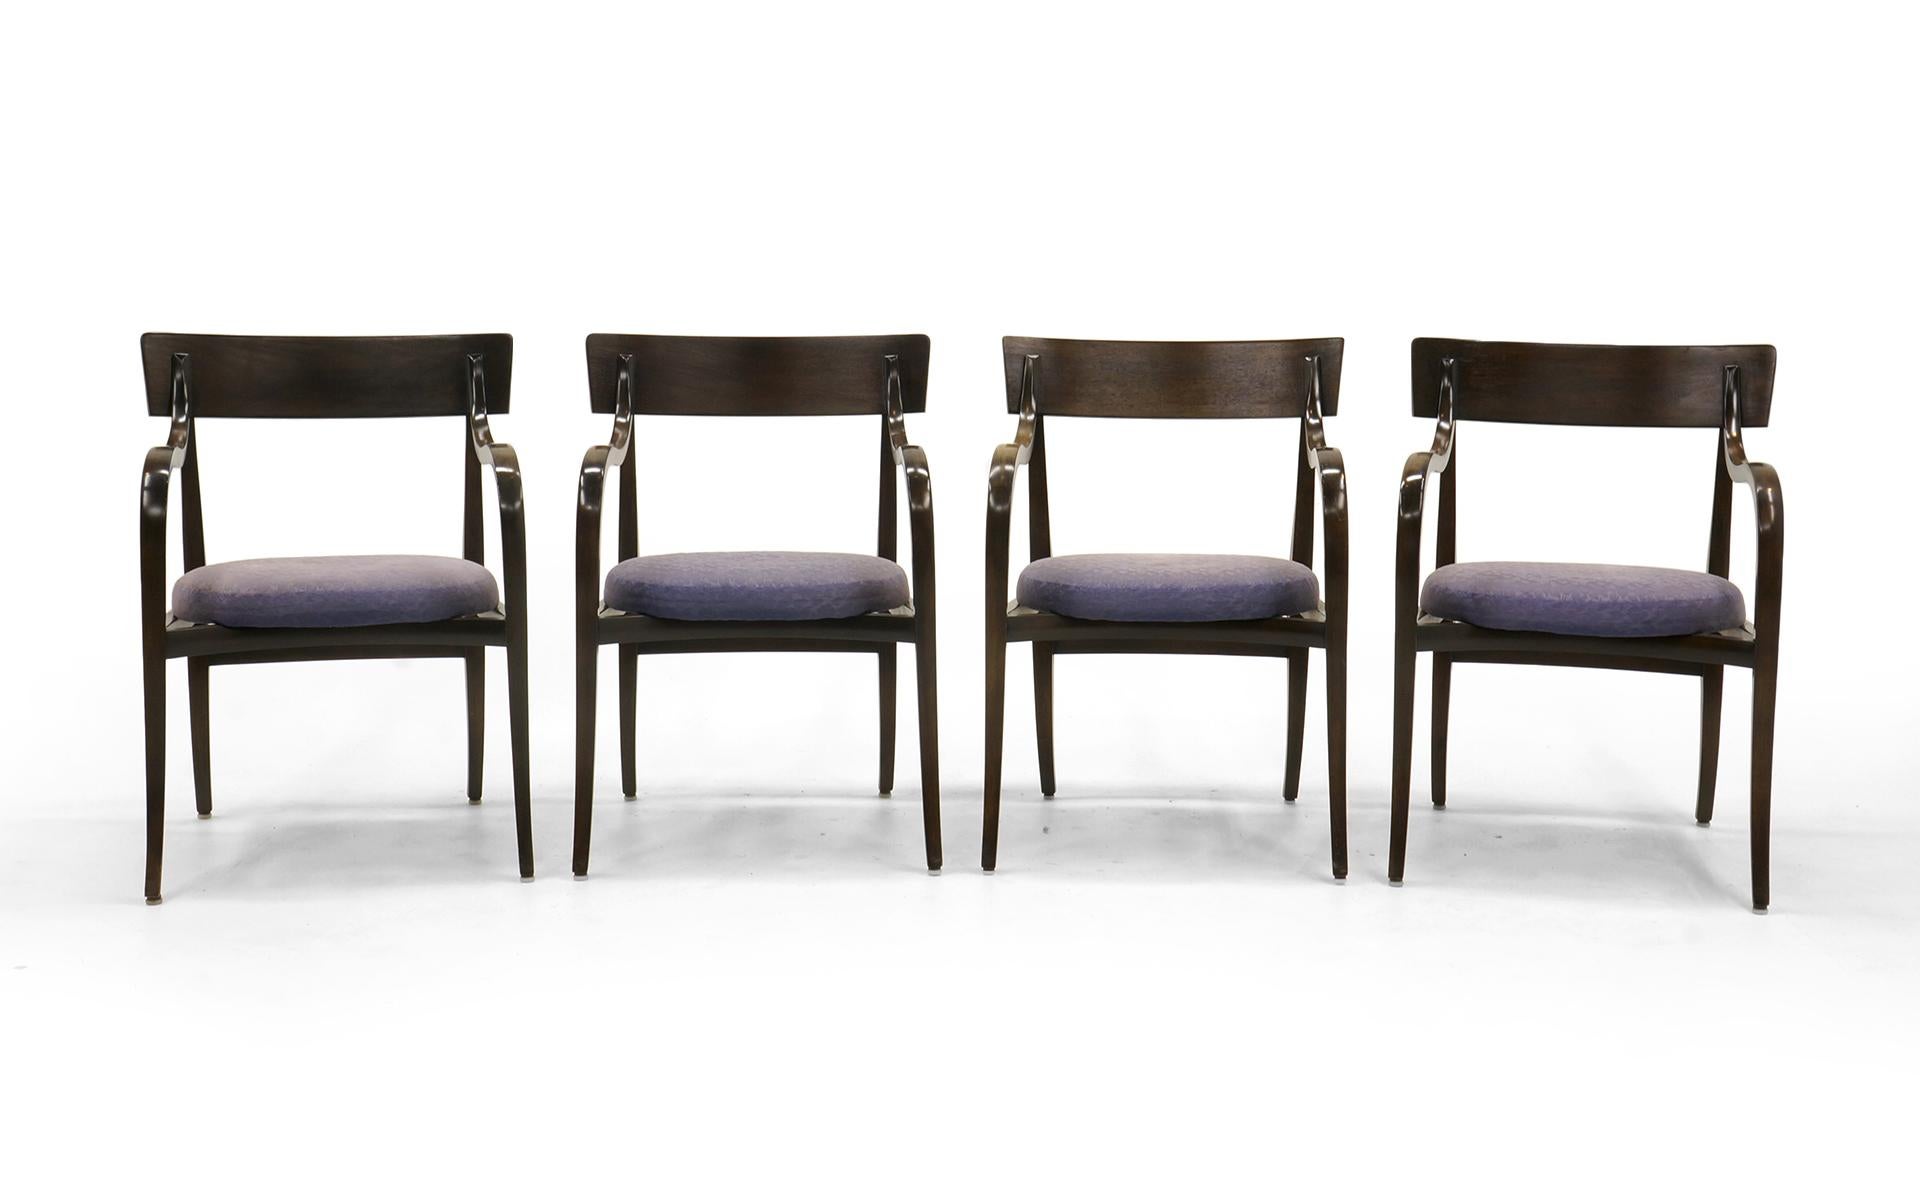 Ensemble de 4 chaises Alexandria conçues par Edward Wormley. L'un des modèles les plus convoités de Wormley. Elles peuvent être utilisées comme chaises de salle à manger/cuisine, chaises de table de jeu ou chaises d'appoint dans n'importe quelle